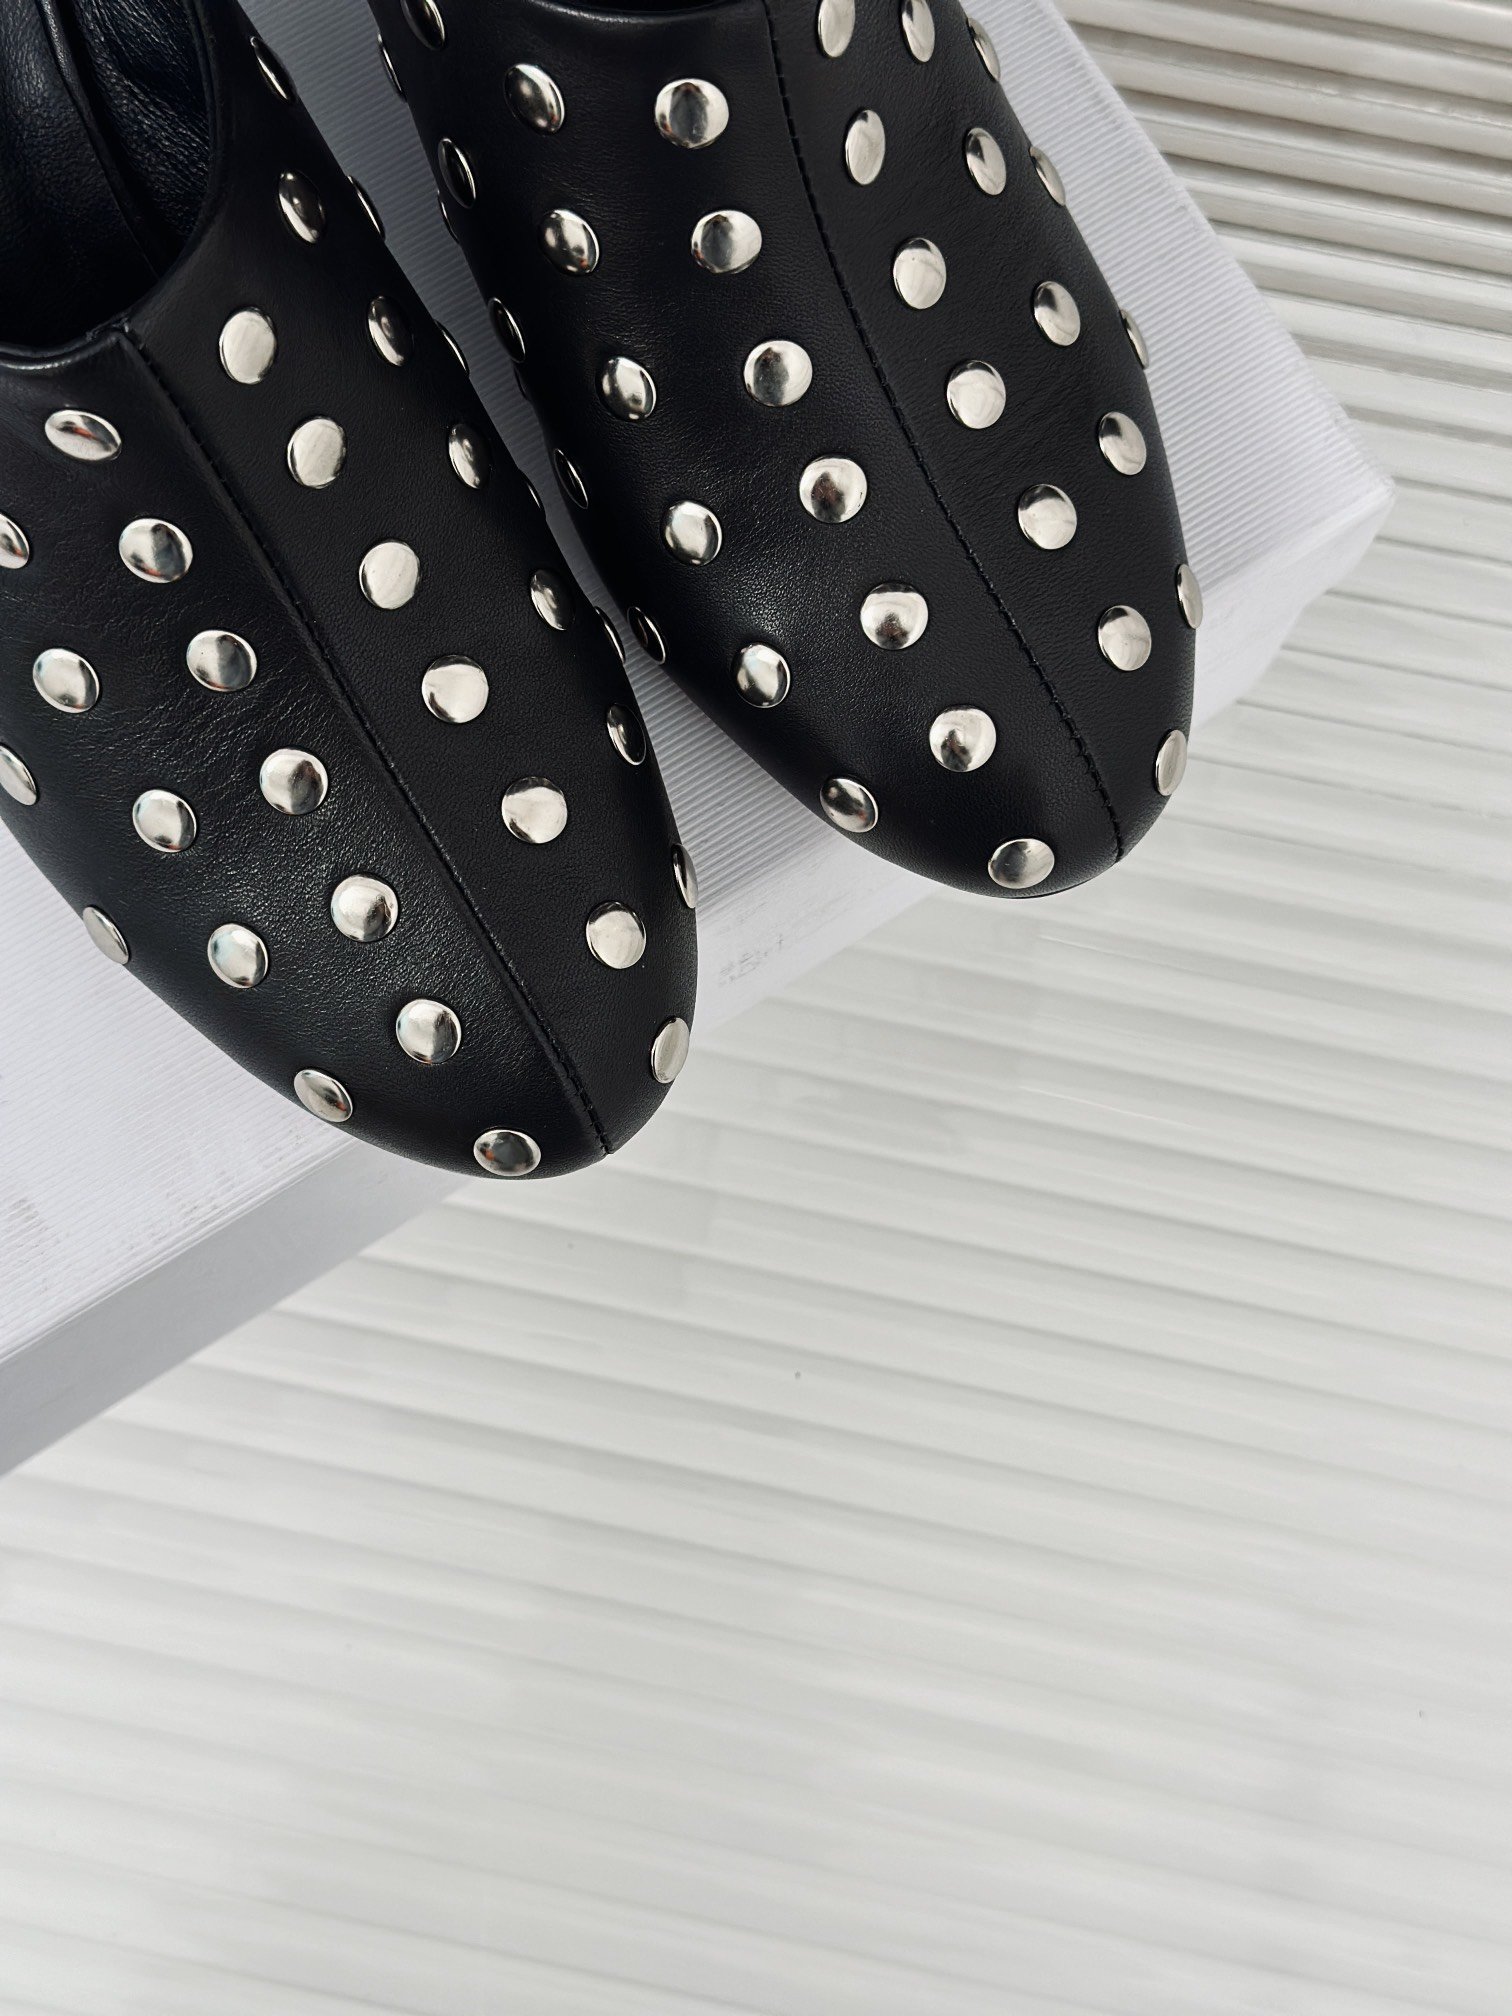 khaite24s春夏新品复铆钉半拖鞋很有当代的复古那味儿极简主义的设计风格上脚超级显瘦又舒适日常随心搭